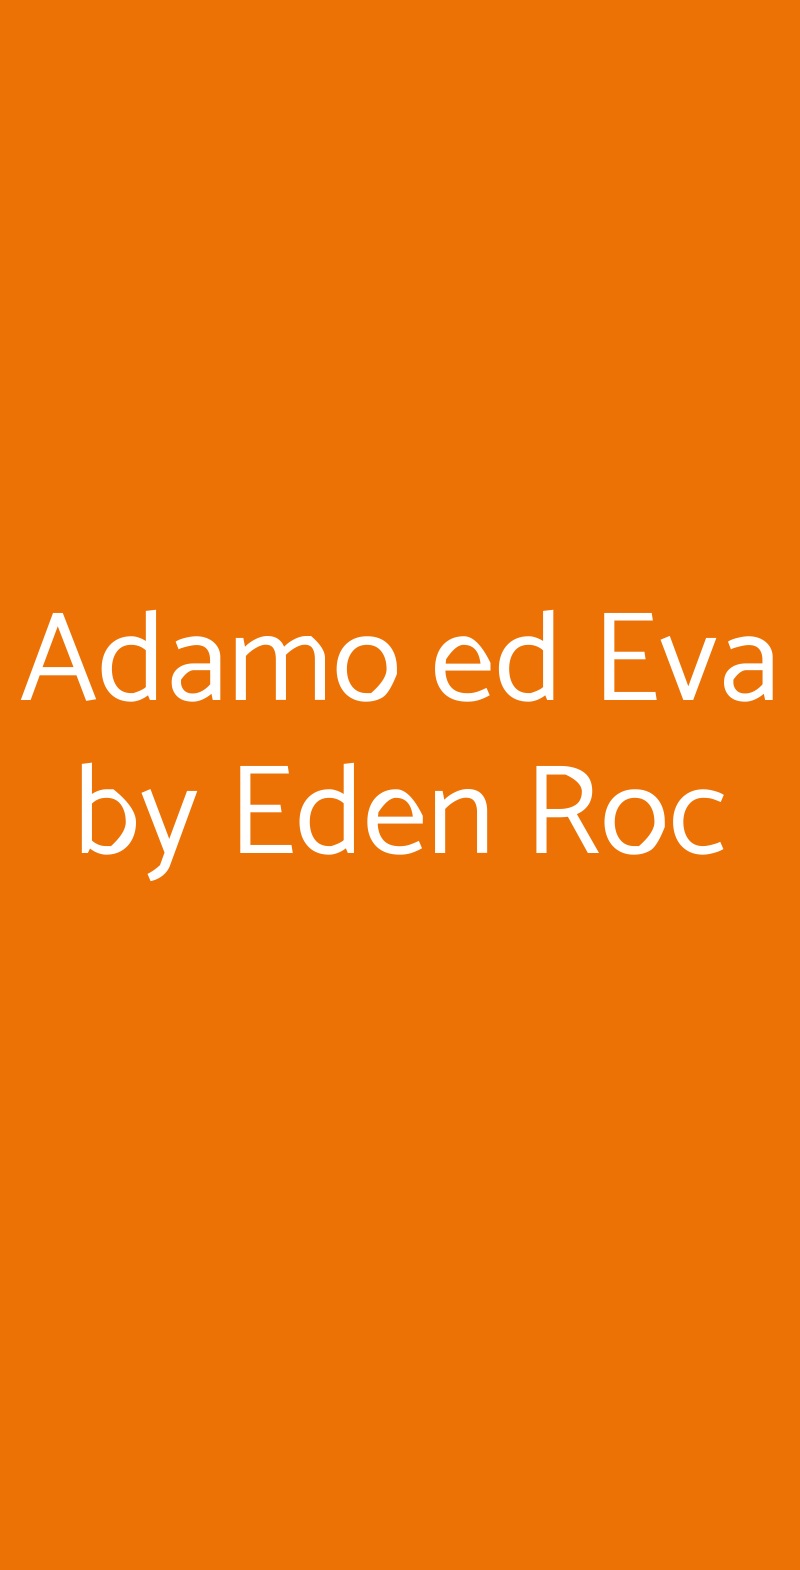 Adamo ed Eva by Eden Roc Positano menù 1 pagina